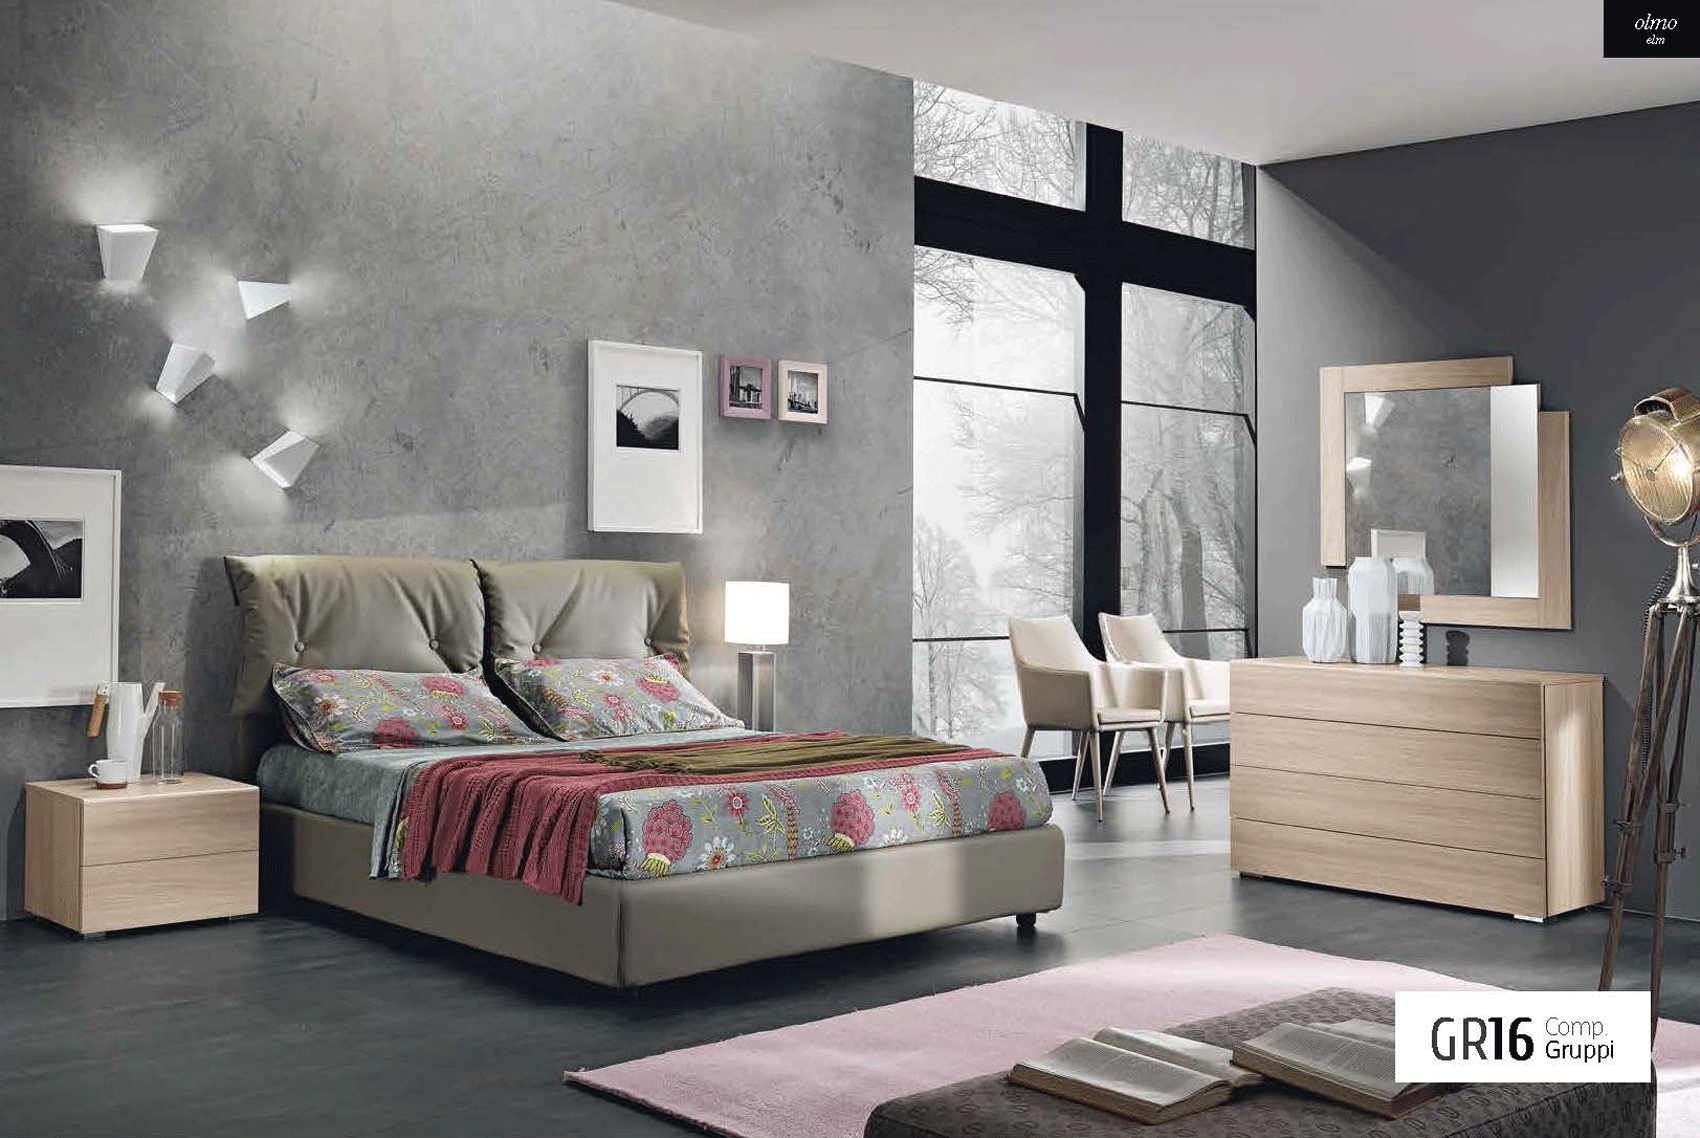 Bedroom Furniture Beds GR16